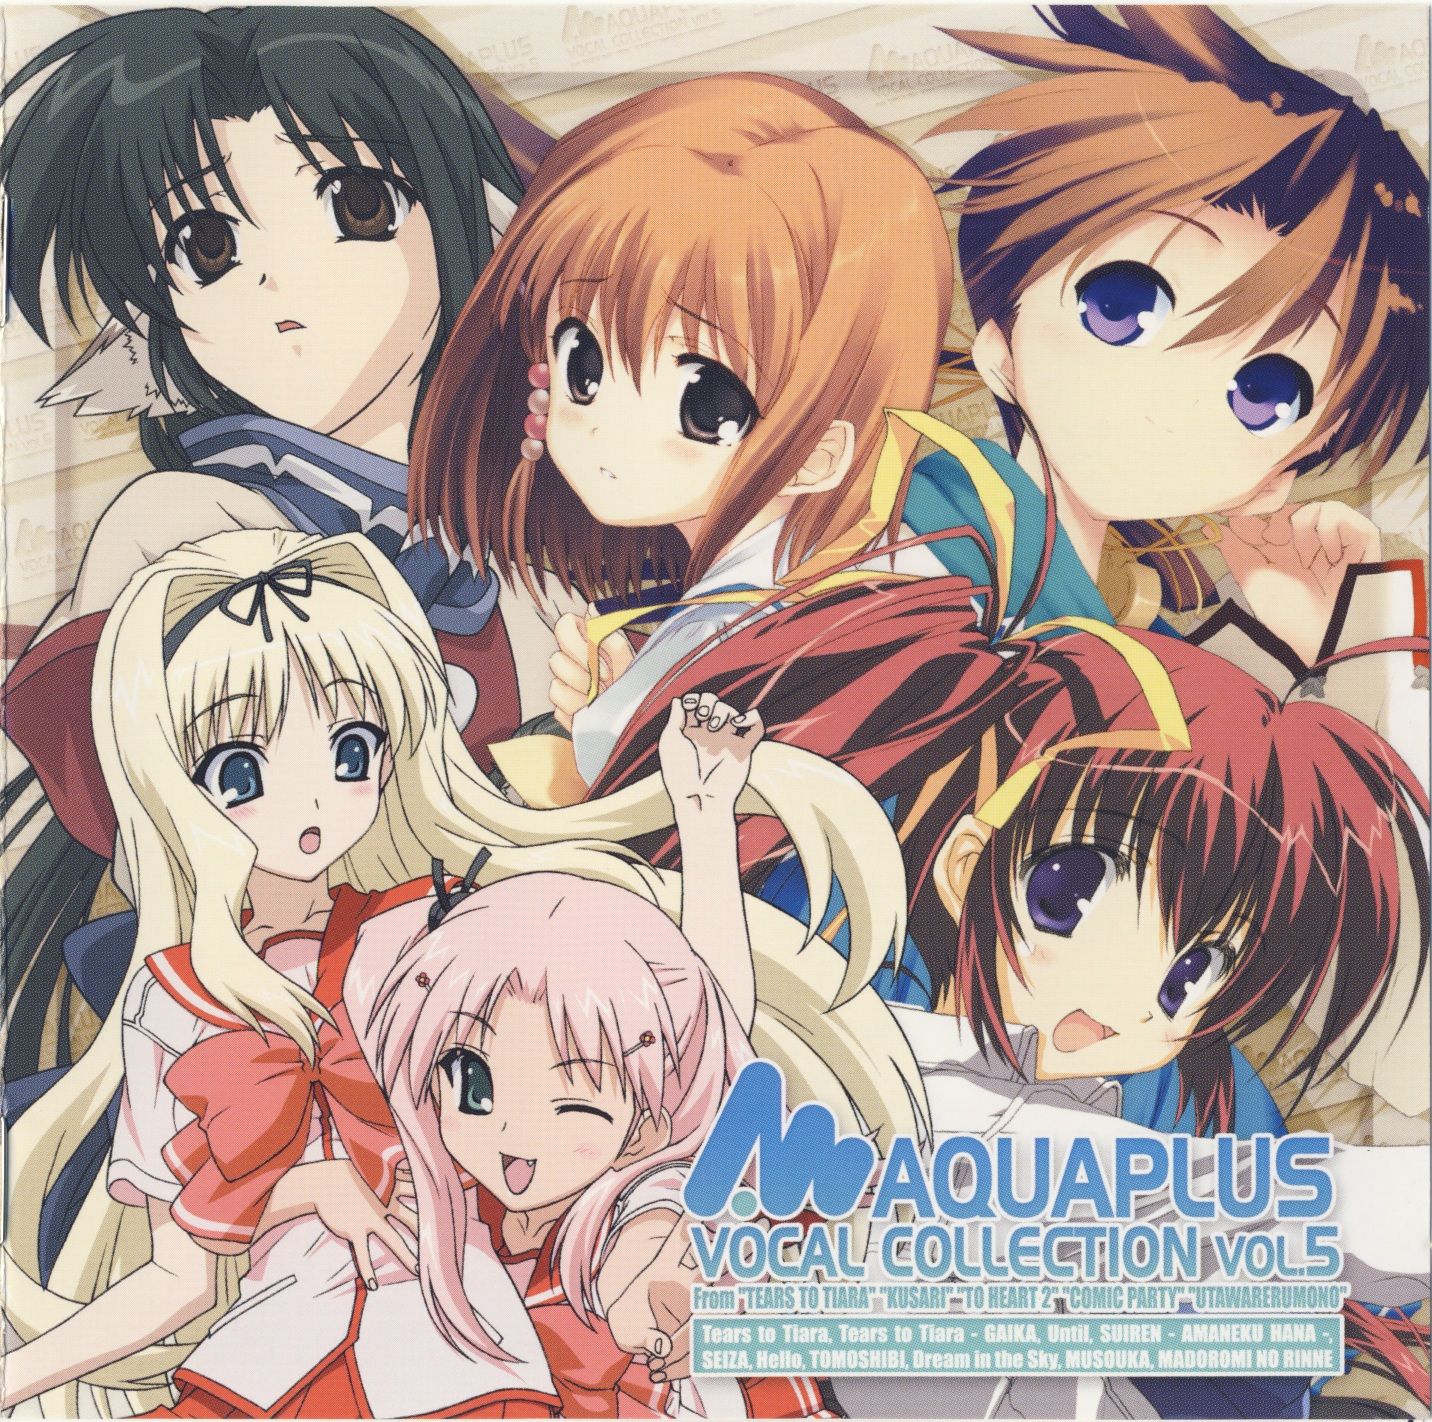 Aquaplus Vocal Collection Vol 5 Bangumi 番组计划